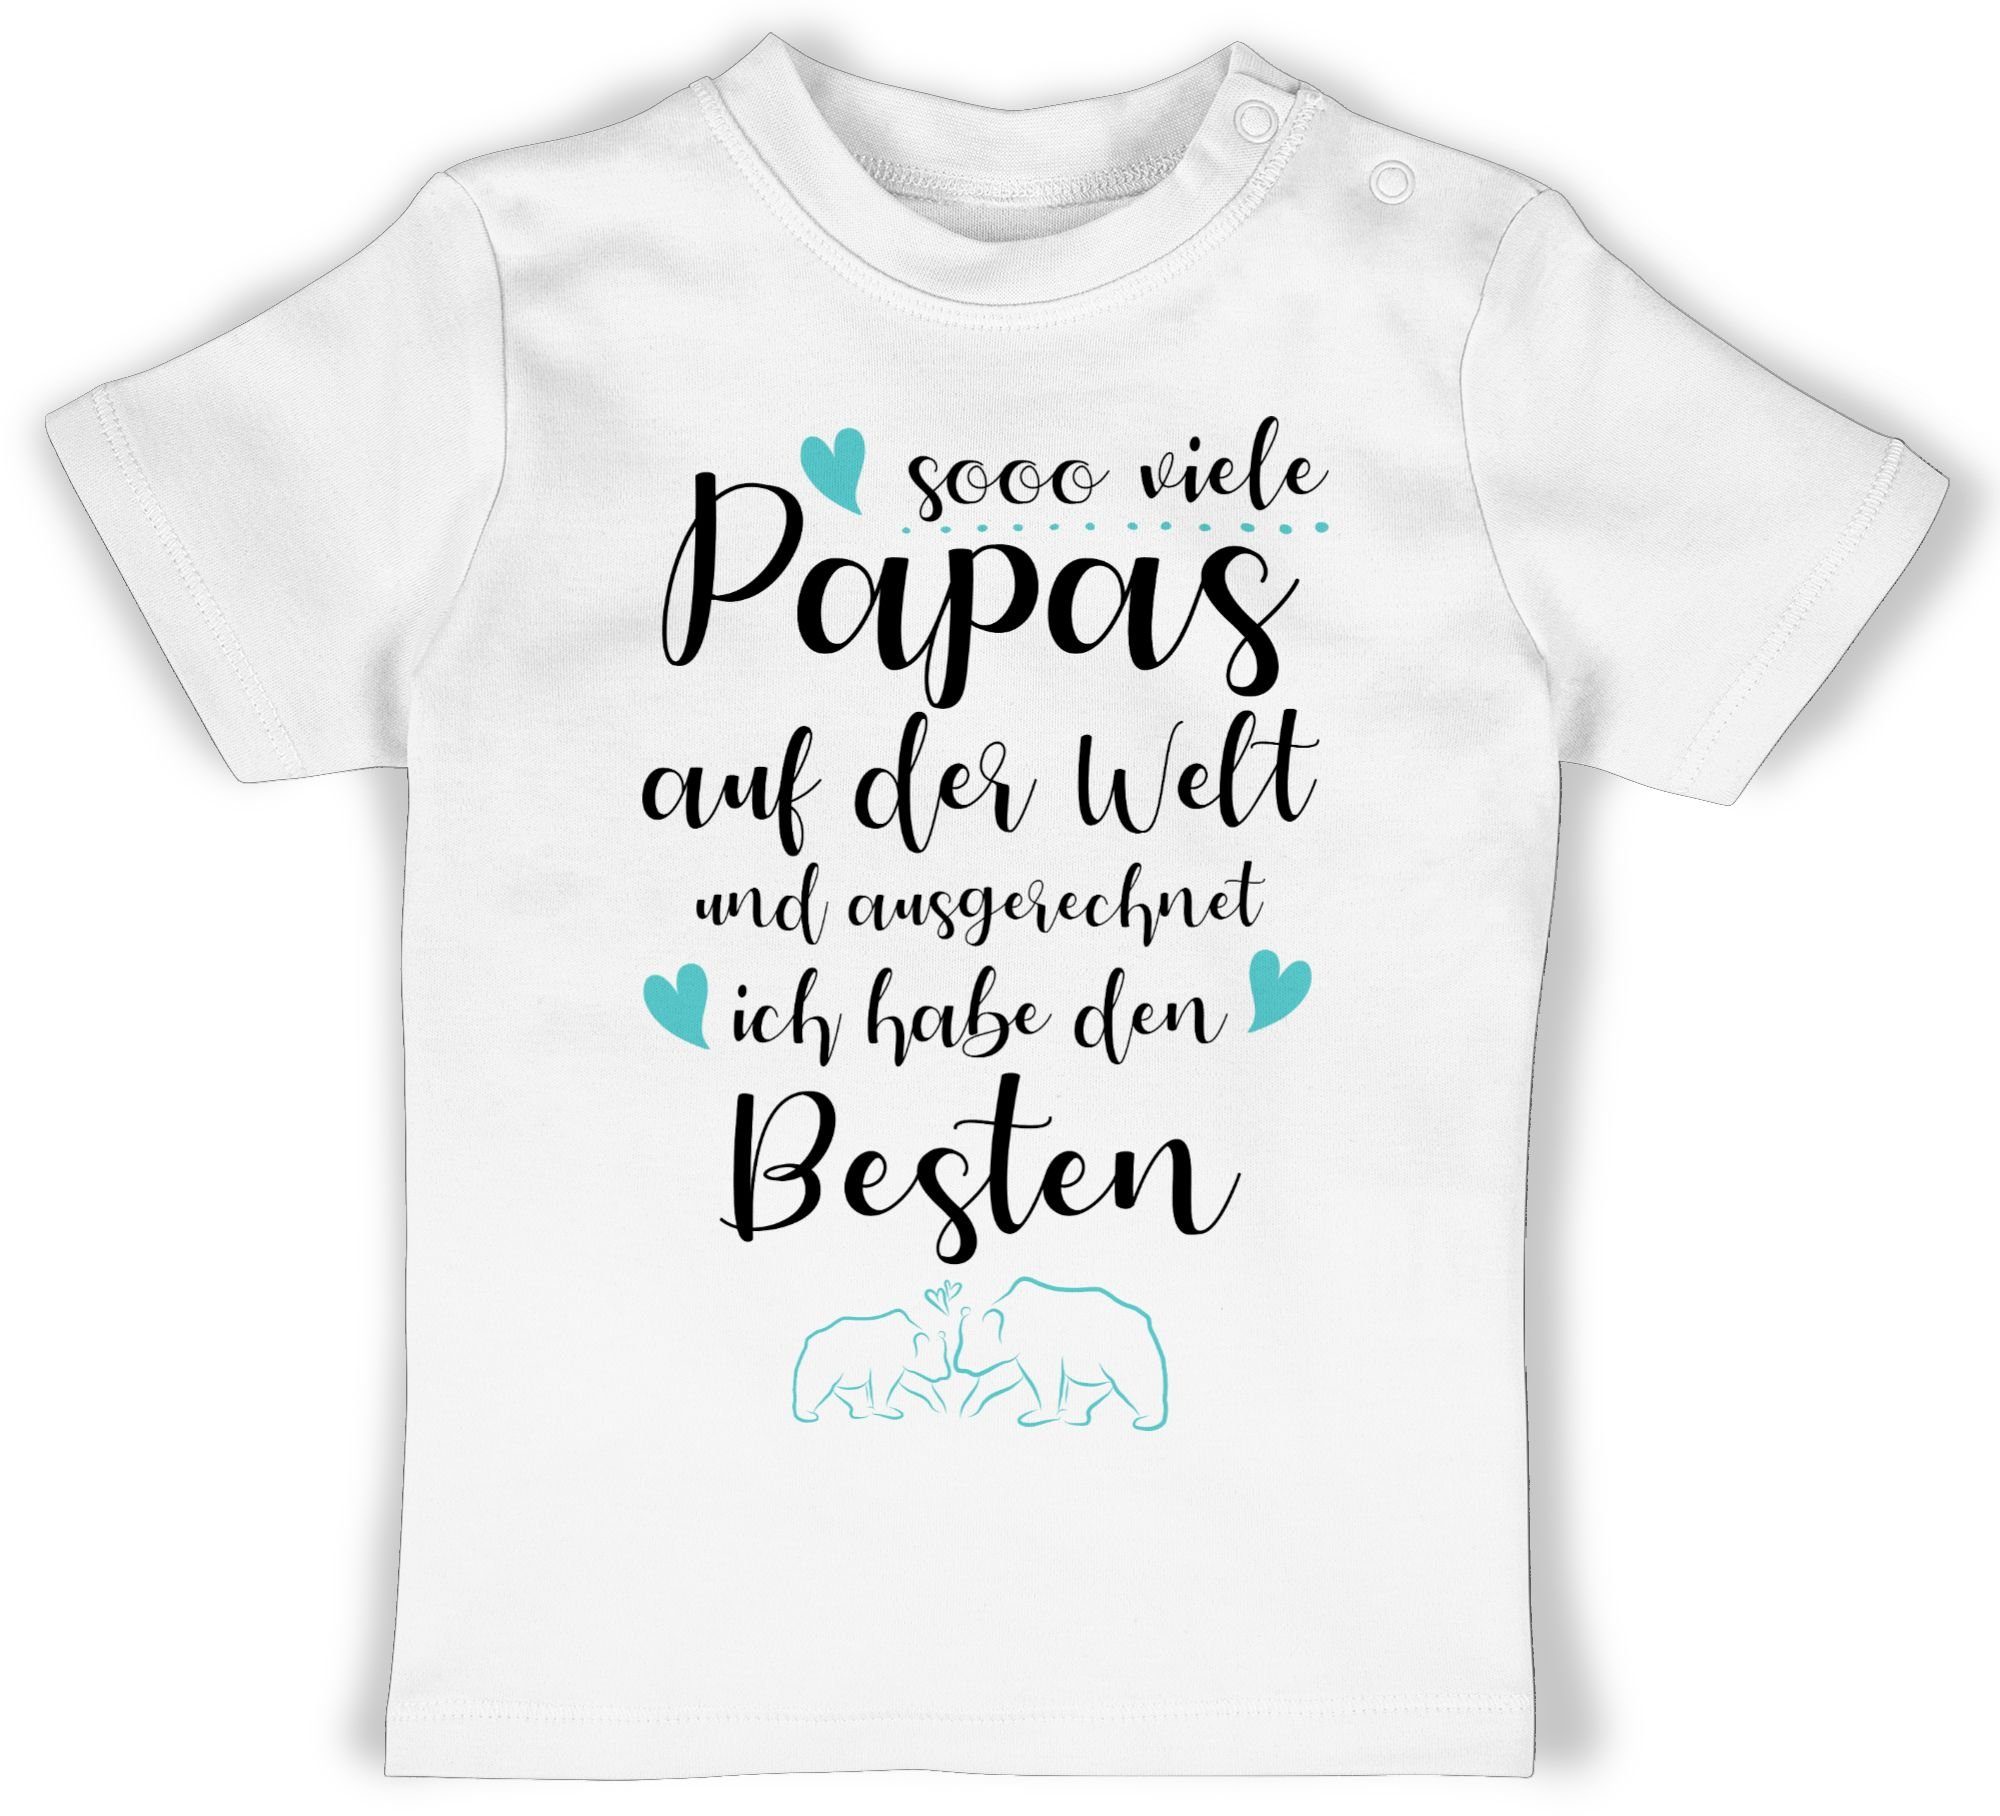 Shirtracer T-Shirt Sooo viele Papas auf der Welt und ausgerechnet ich habe den Besten Geschenk Vatertag Baby 1 Weiß | T-Shirts